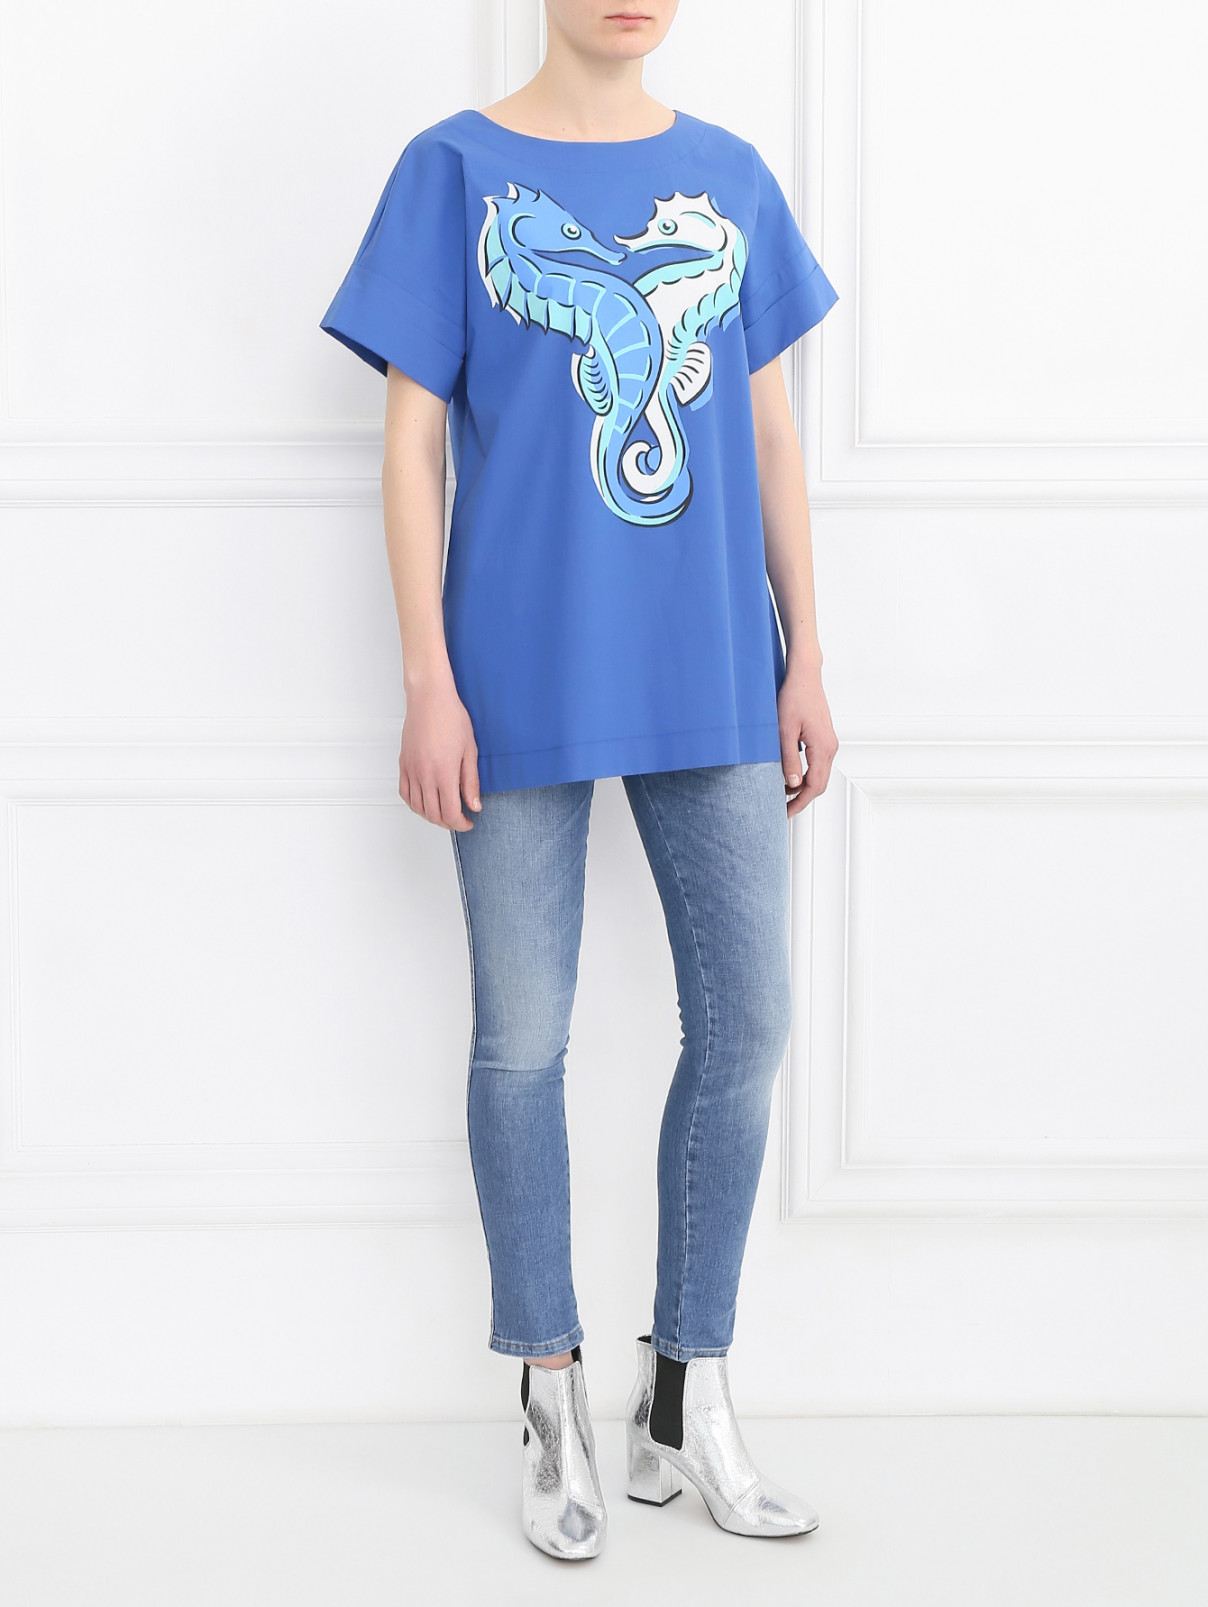 Рубашка из хлопка с принтом Moschino Boutique  –  Модель Общий вид  – Цвет:  Синий